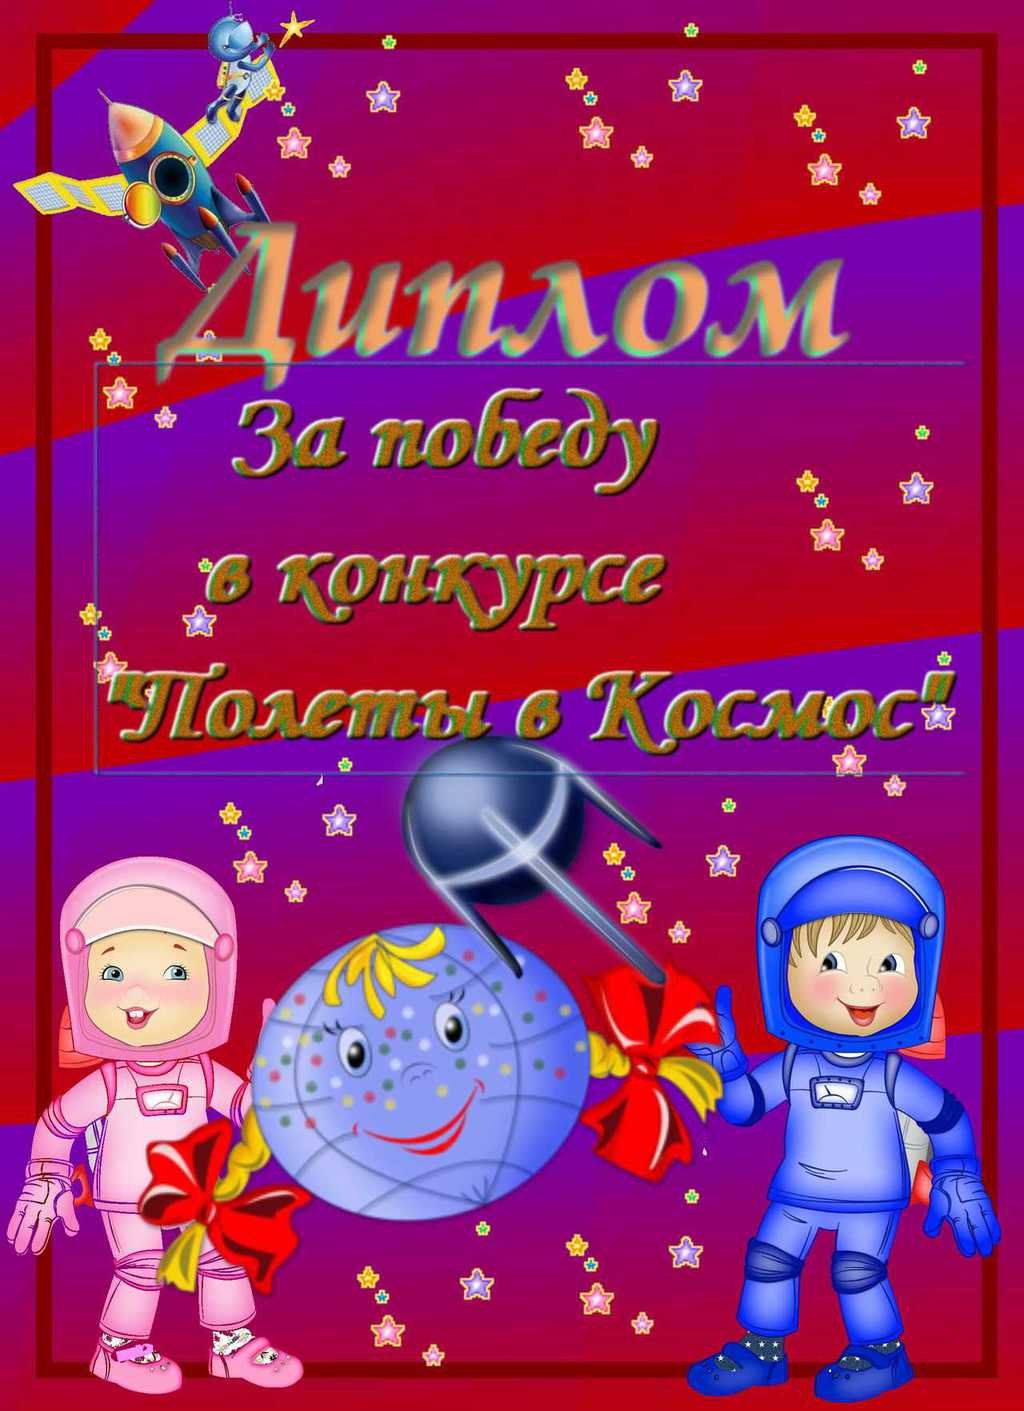 Объявления ко дню космонавтики в детском саду. Грамота ко Дню космонавтики. Грамота ко Дню космонавтики для детей. Грамота космос для детей.